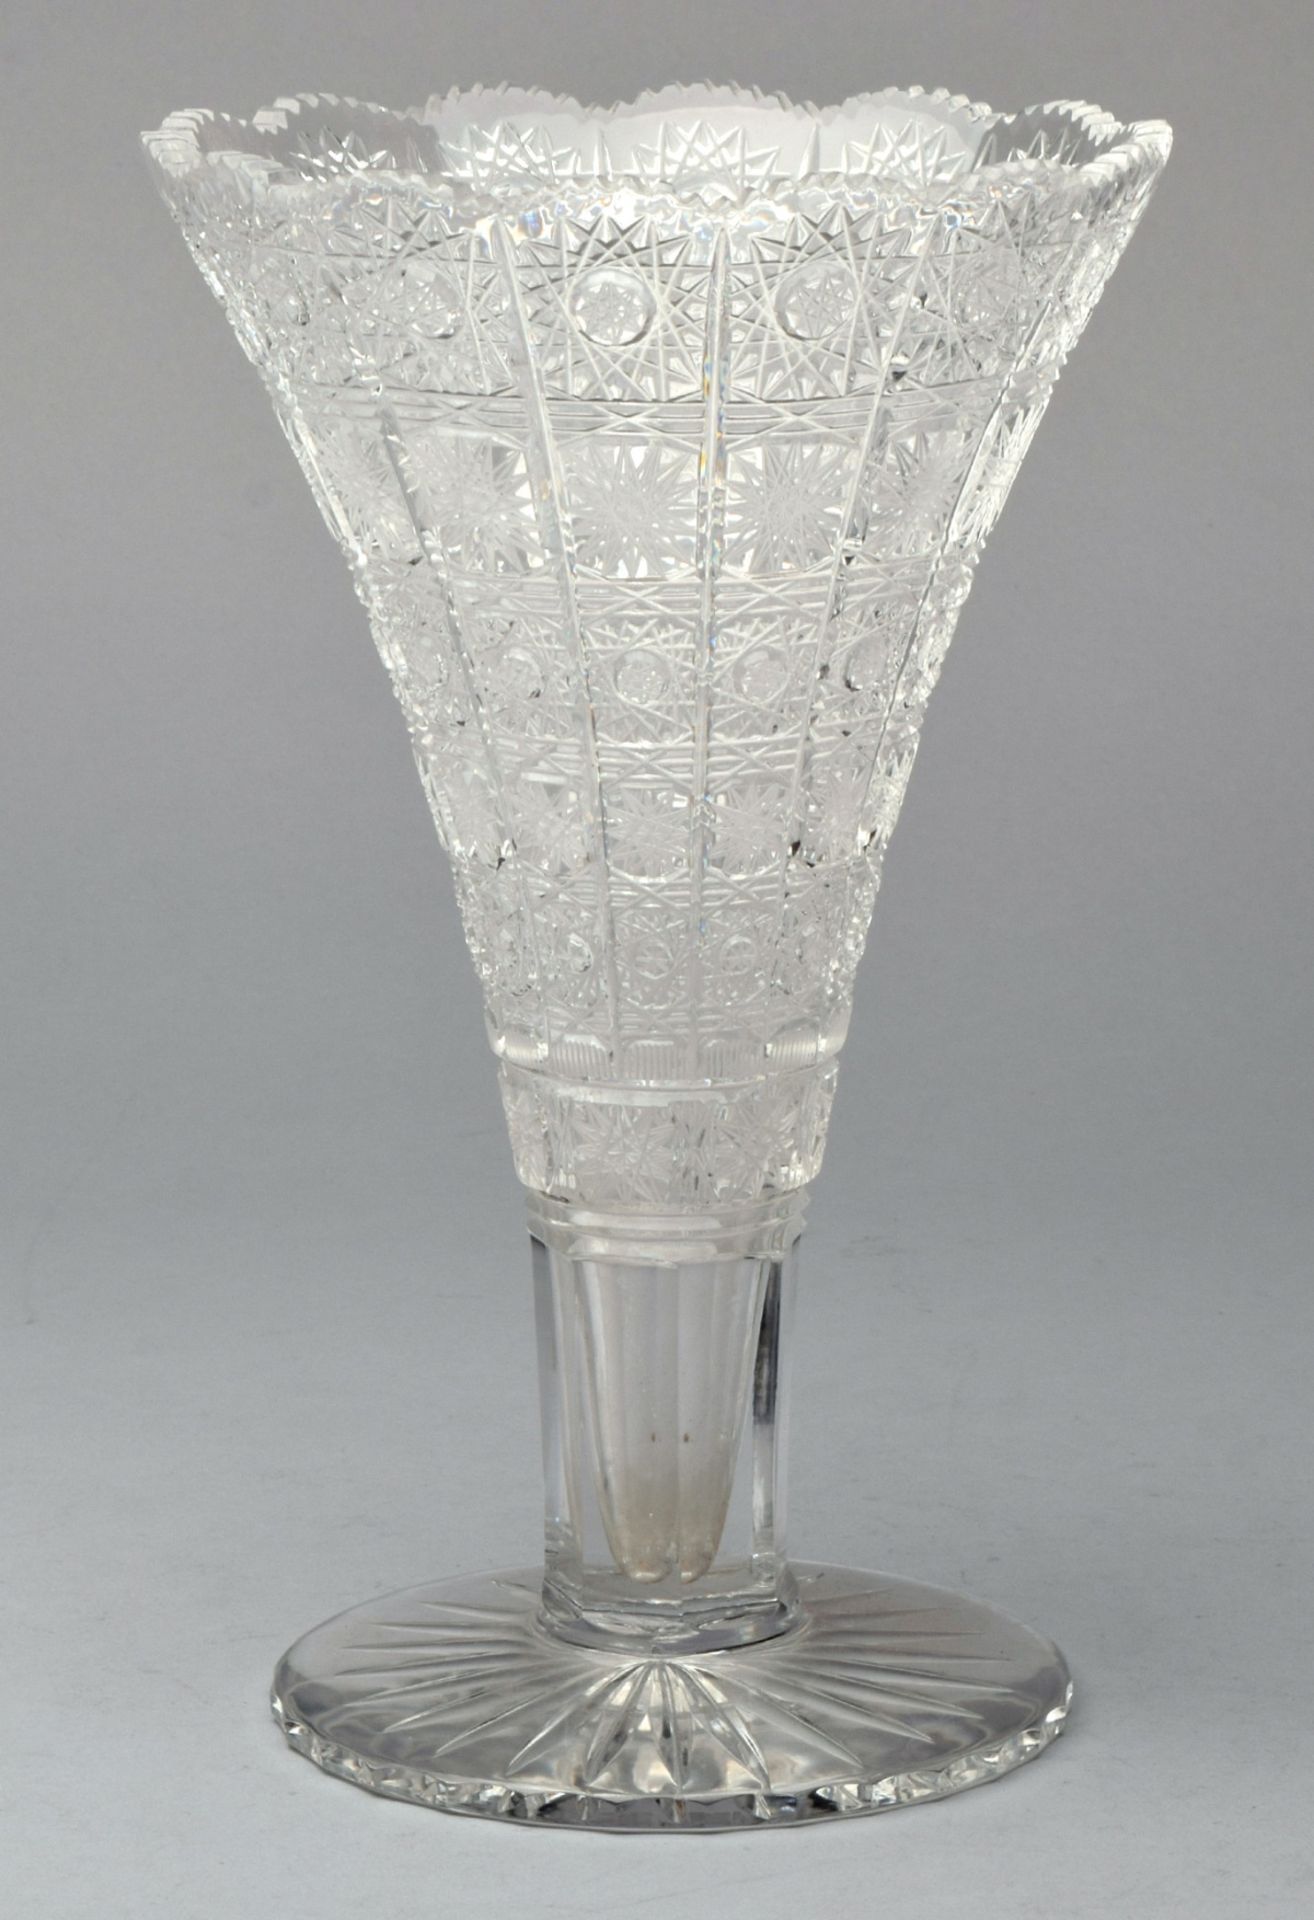 Kristallvase farblos, breiter Rundfuß mit Bodenstern, geschälter Zylinderschaft in die - Image 2 of 2